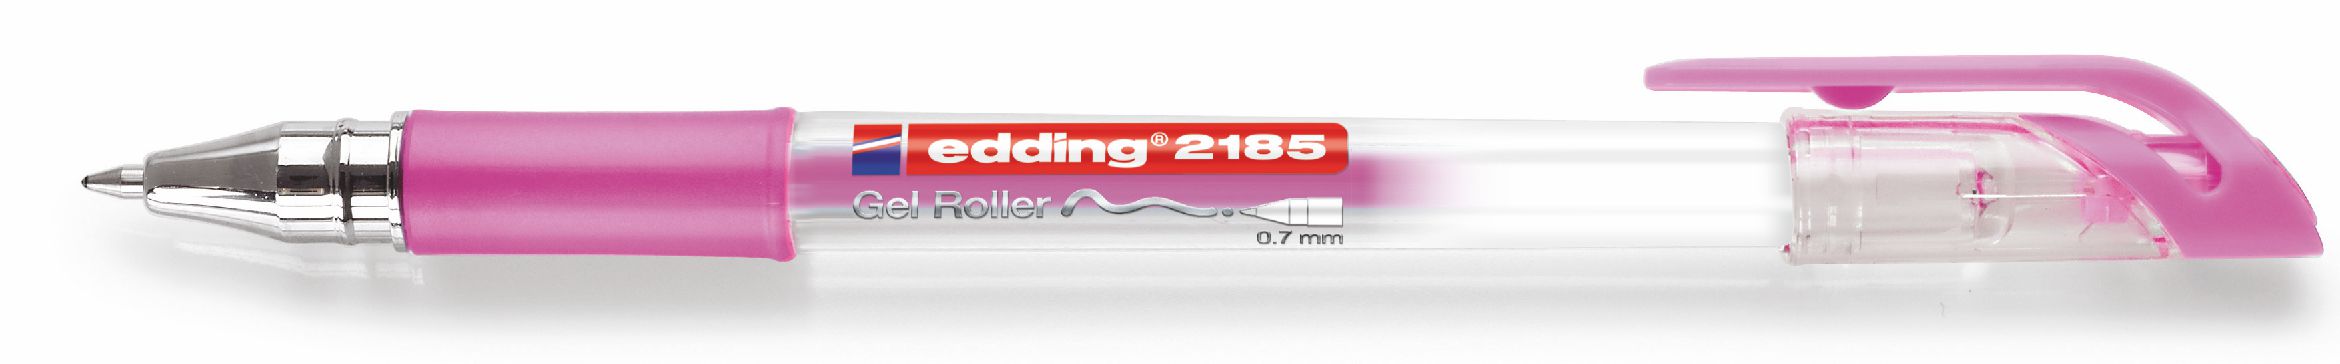 edding-2185-jel-roller